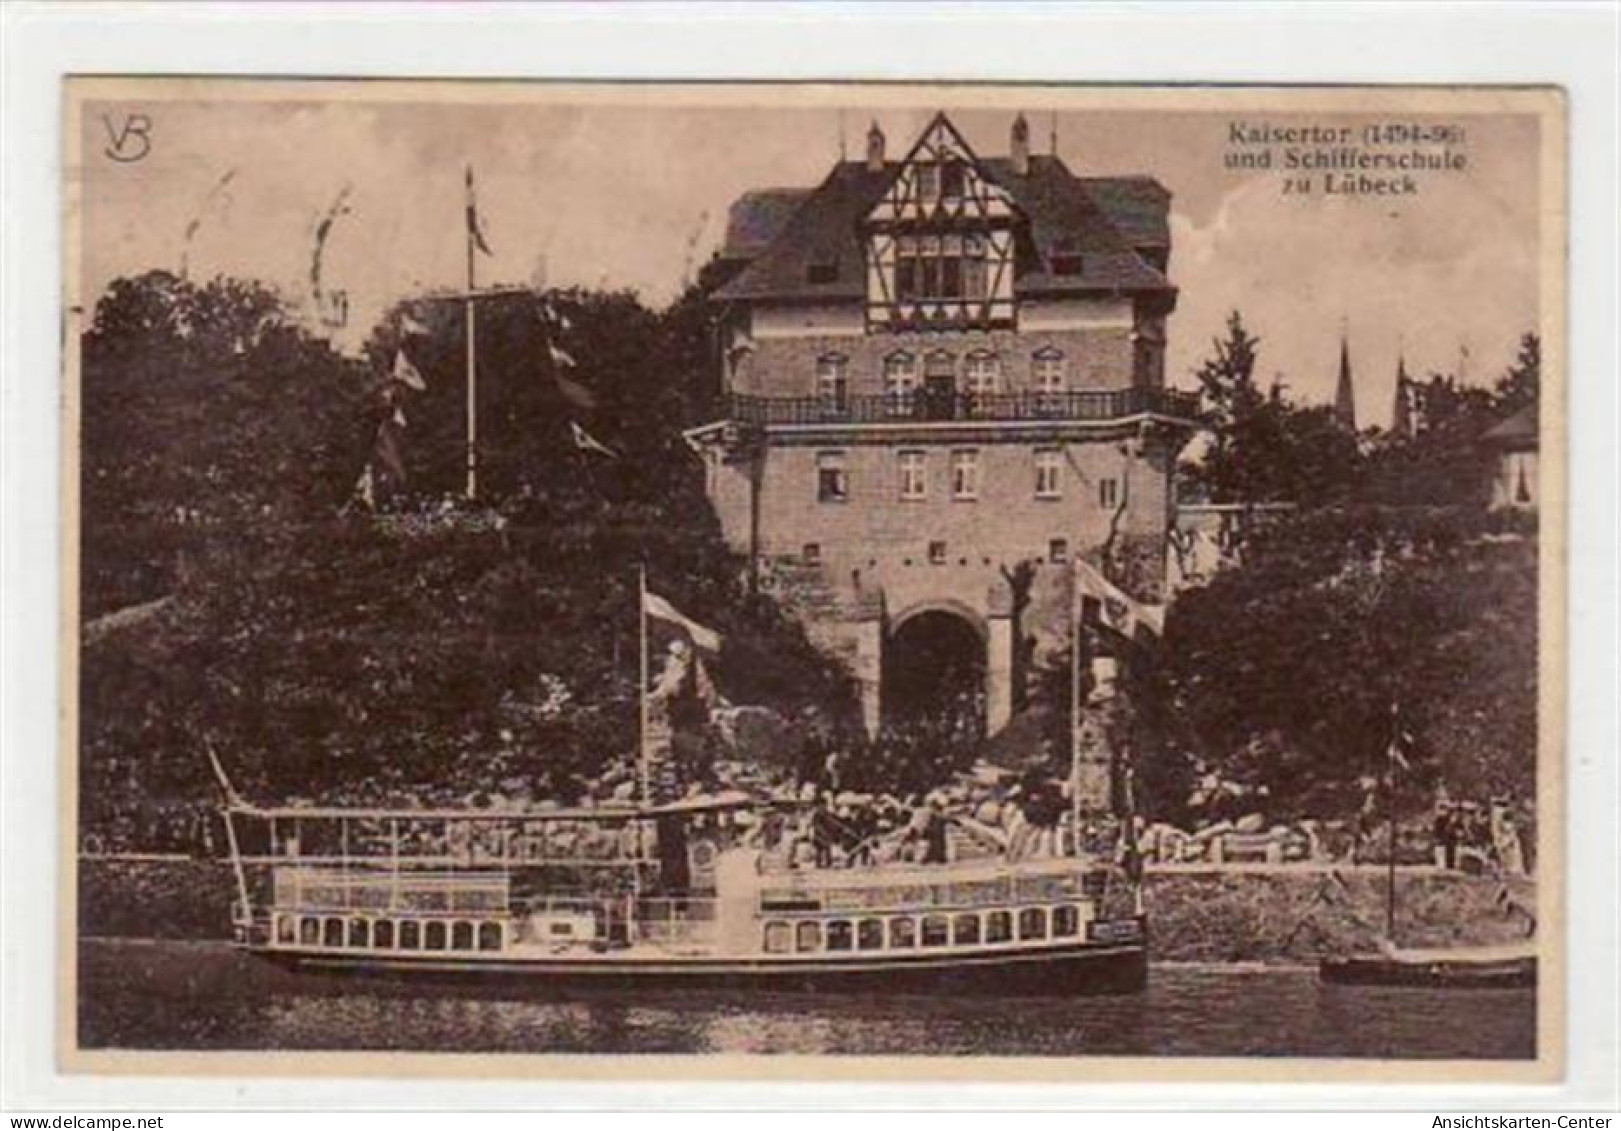 39070904 - Luebeck Mit Kaisertor Und Schifferschule Gelaufen, 1928. Leichte Stempelspuren, Kleiner Knick Oben Links, So - Luebeck